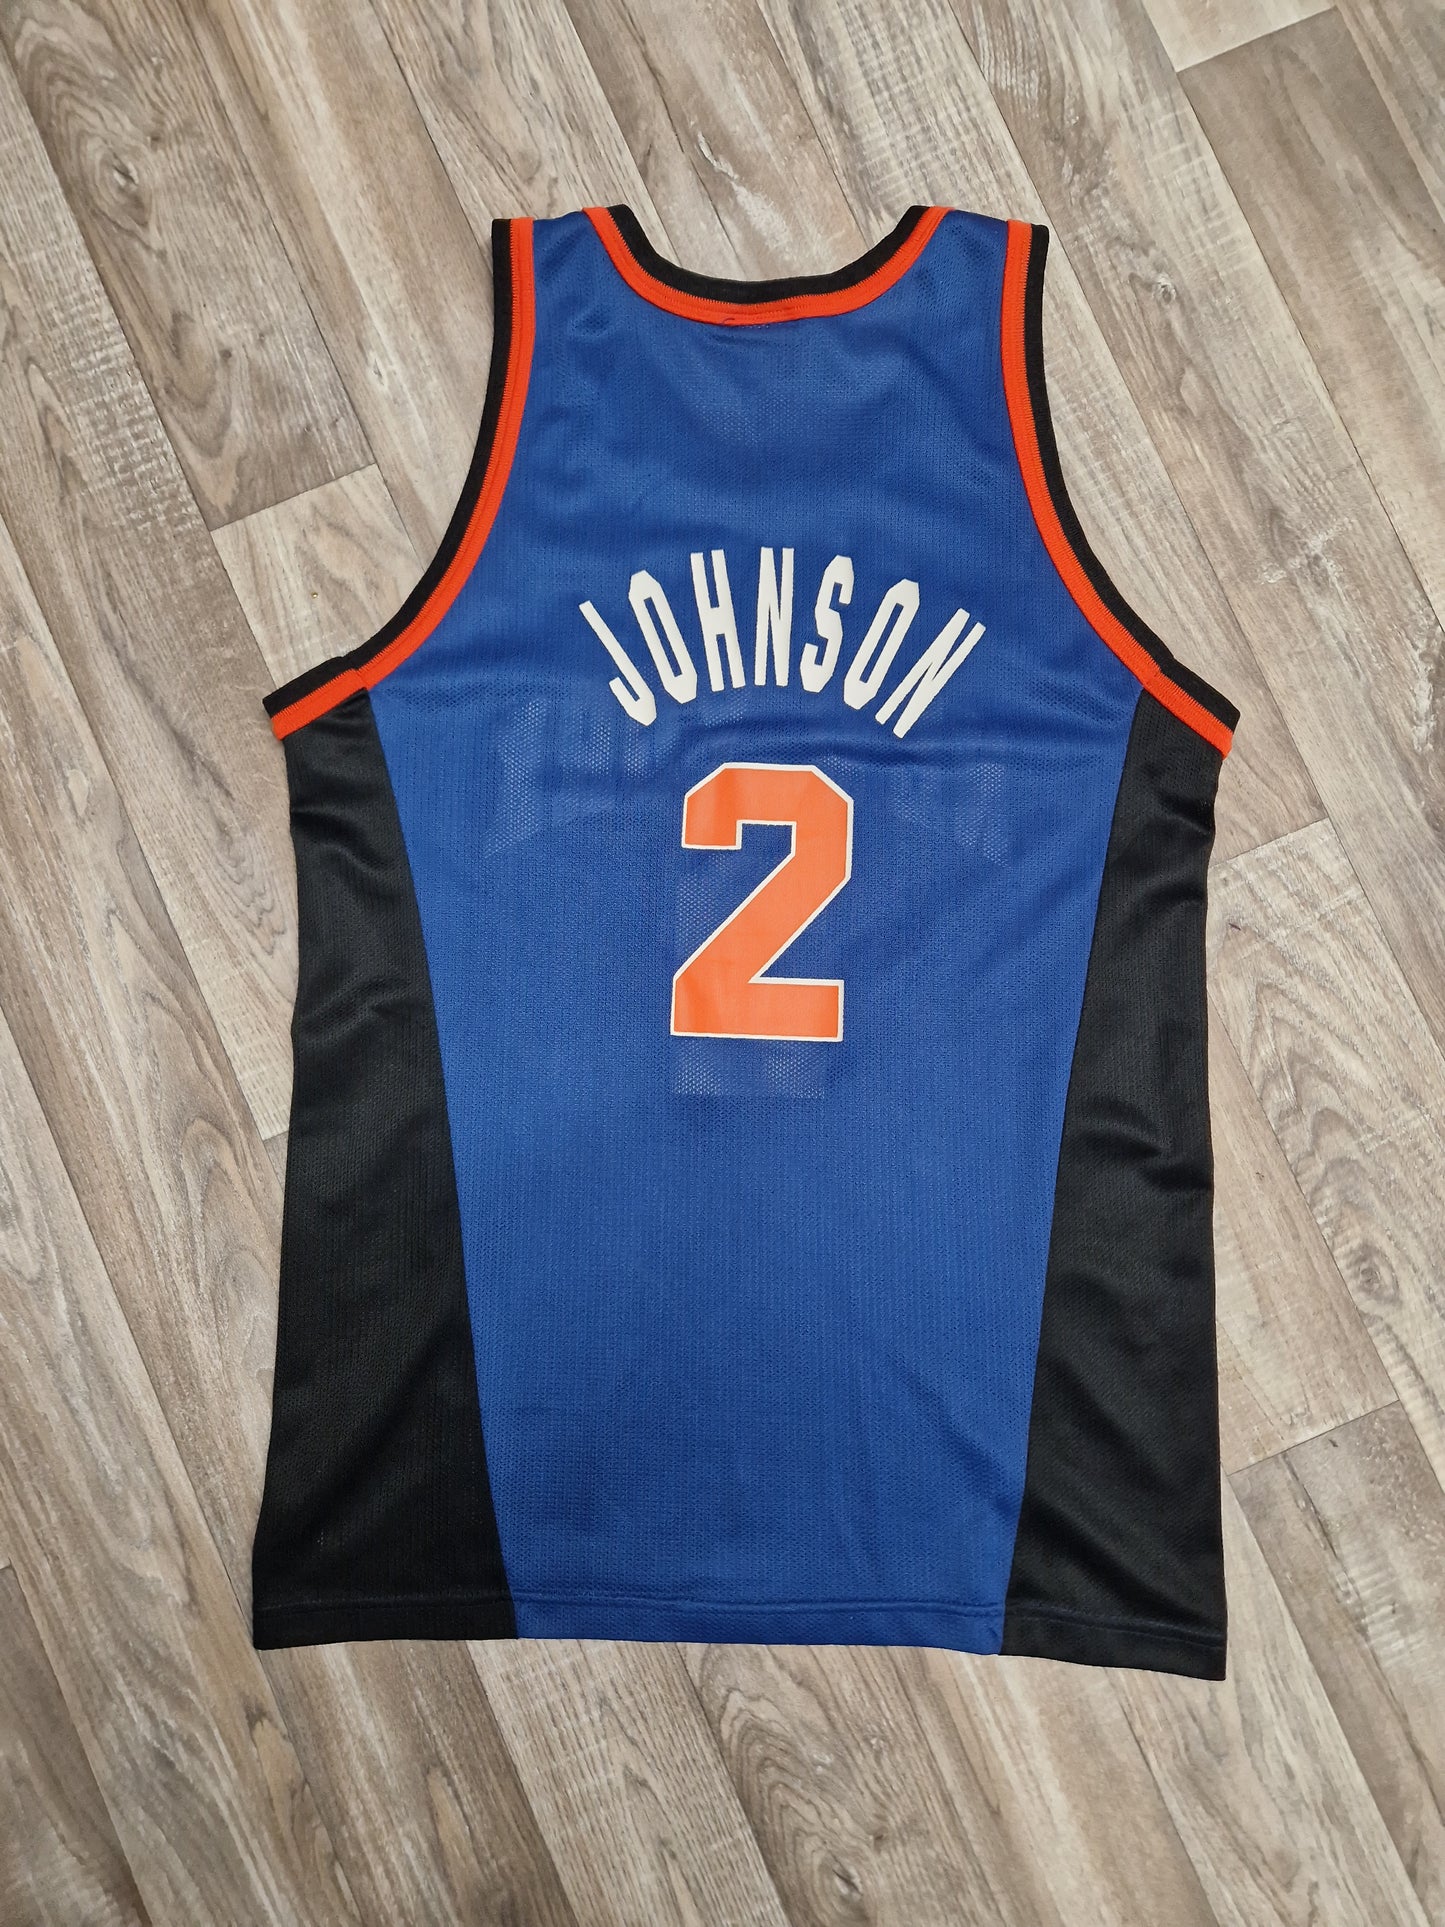 Larry Johnson New York Knicks Jersey Size Large